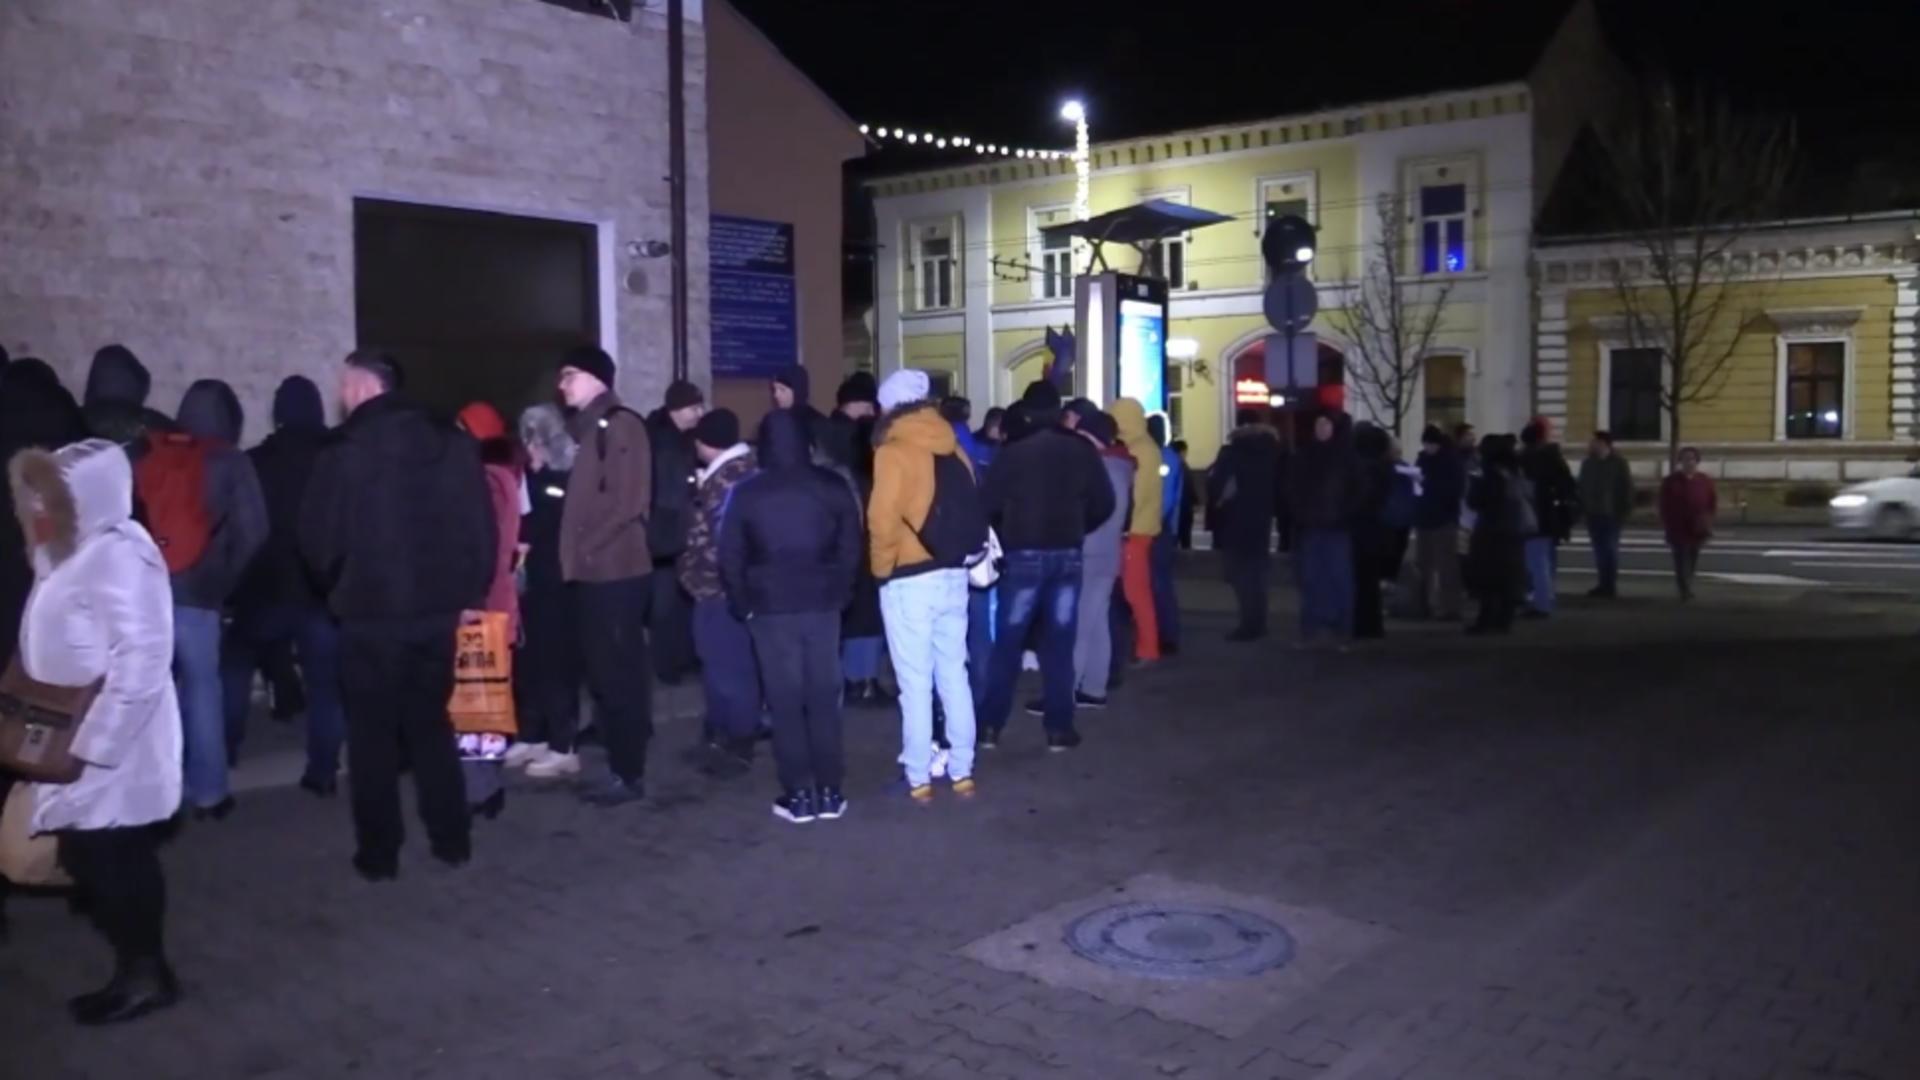 Bătaie pe locurile de parcare în Cluj. Românii au stat la coadă toată noaptea în frig pentru a depune cererile la ghișeu